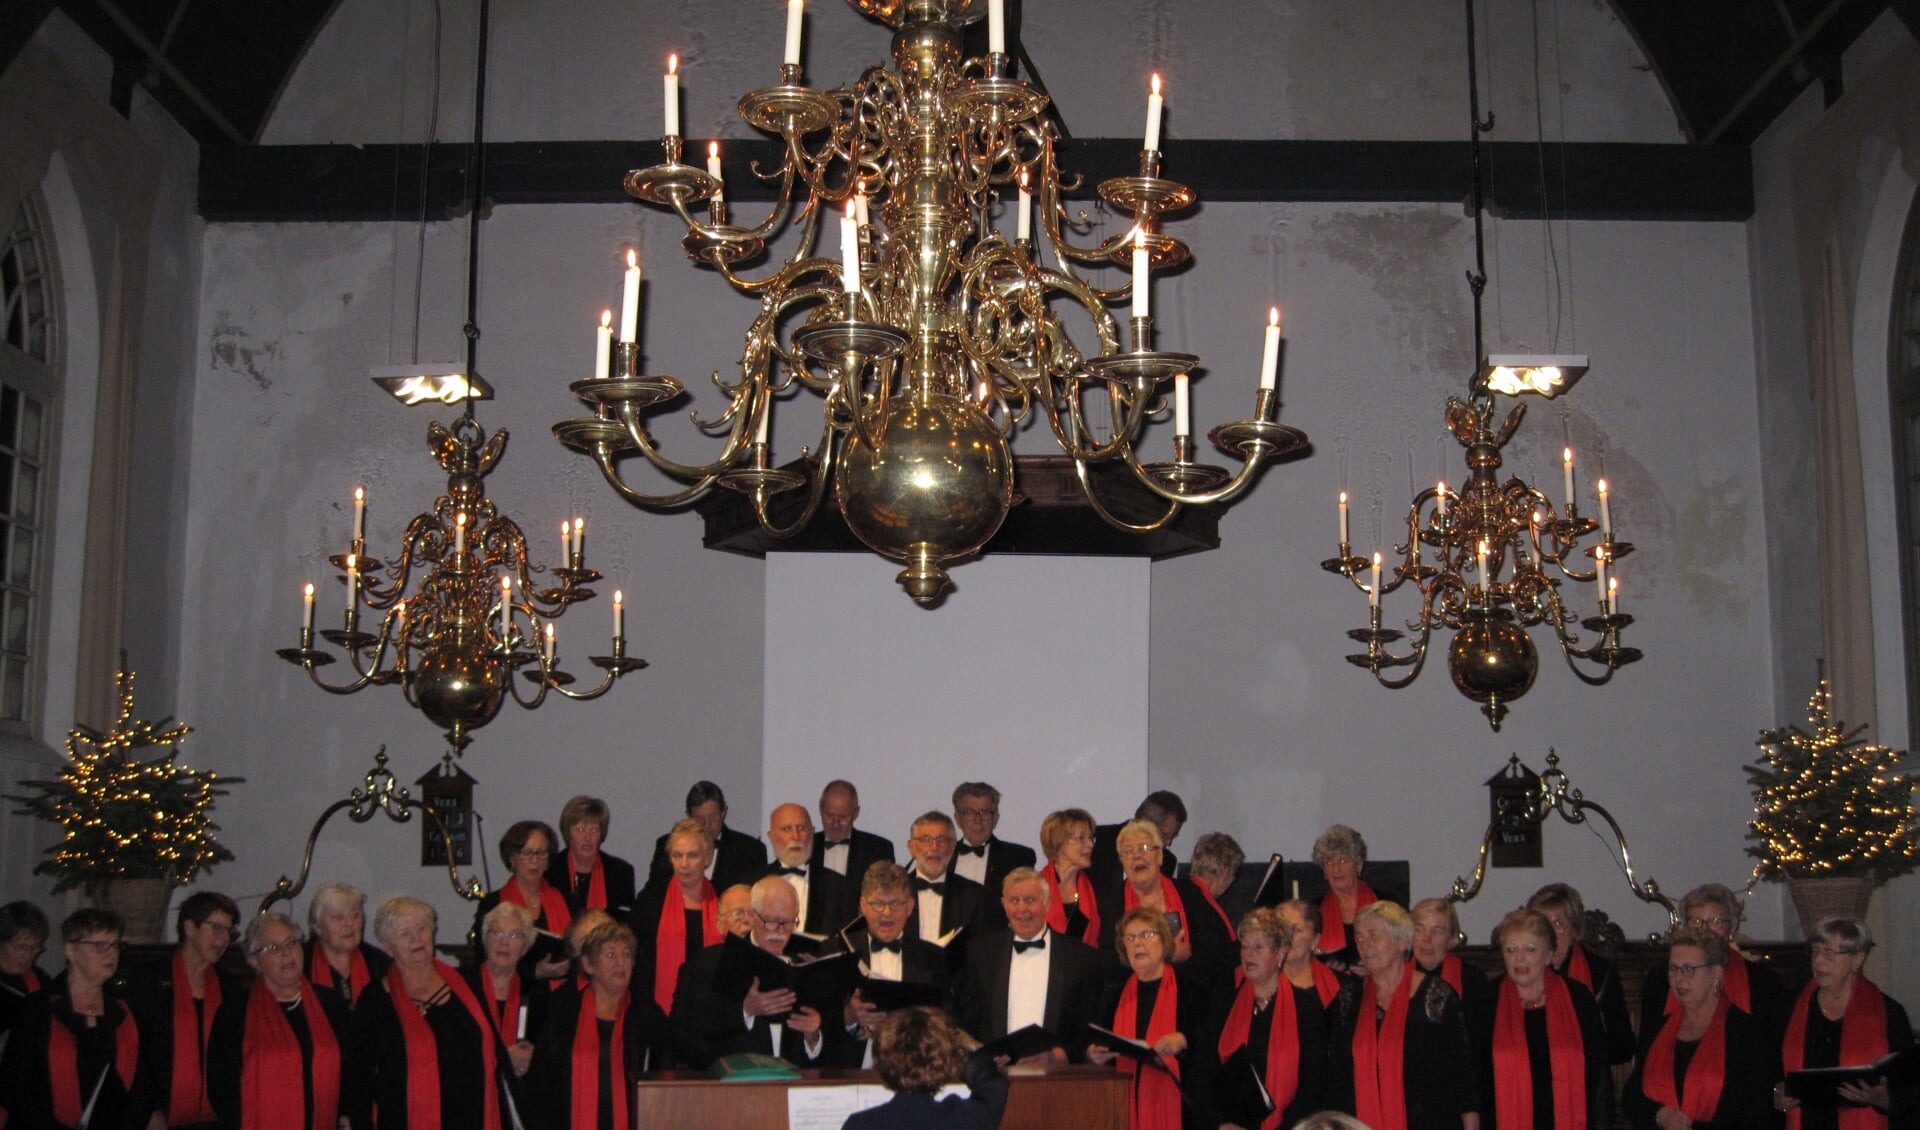 Voor de pauze gaan het koor Zang en Vriendschap en het Accordeonensemble variamuziek laten horen die bij Kerstmis past. (Foto: Jisperkerk)